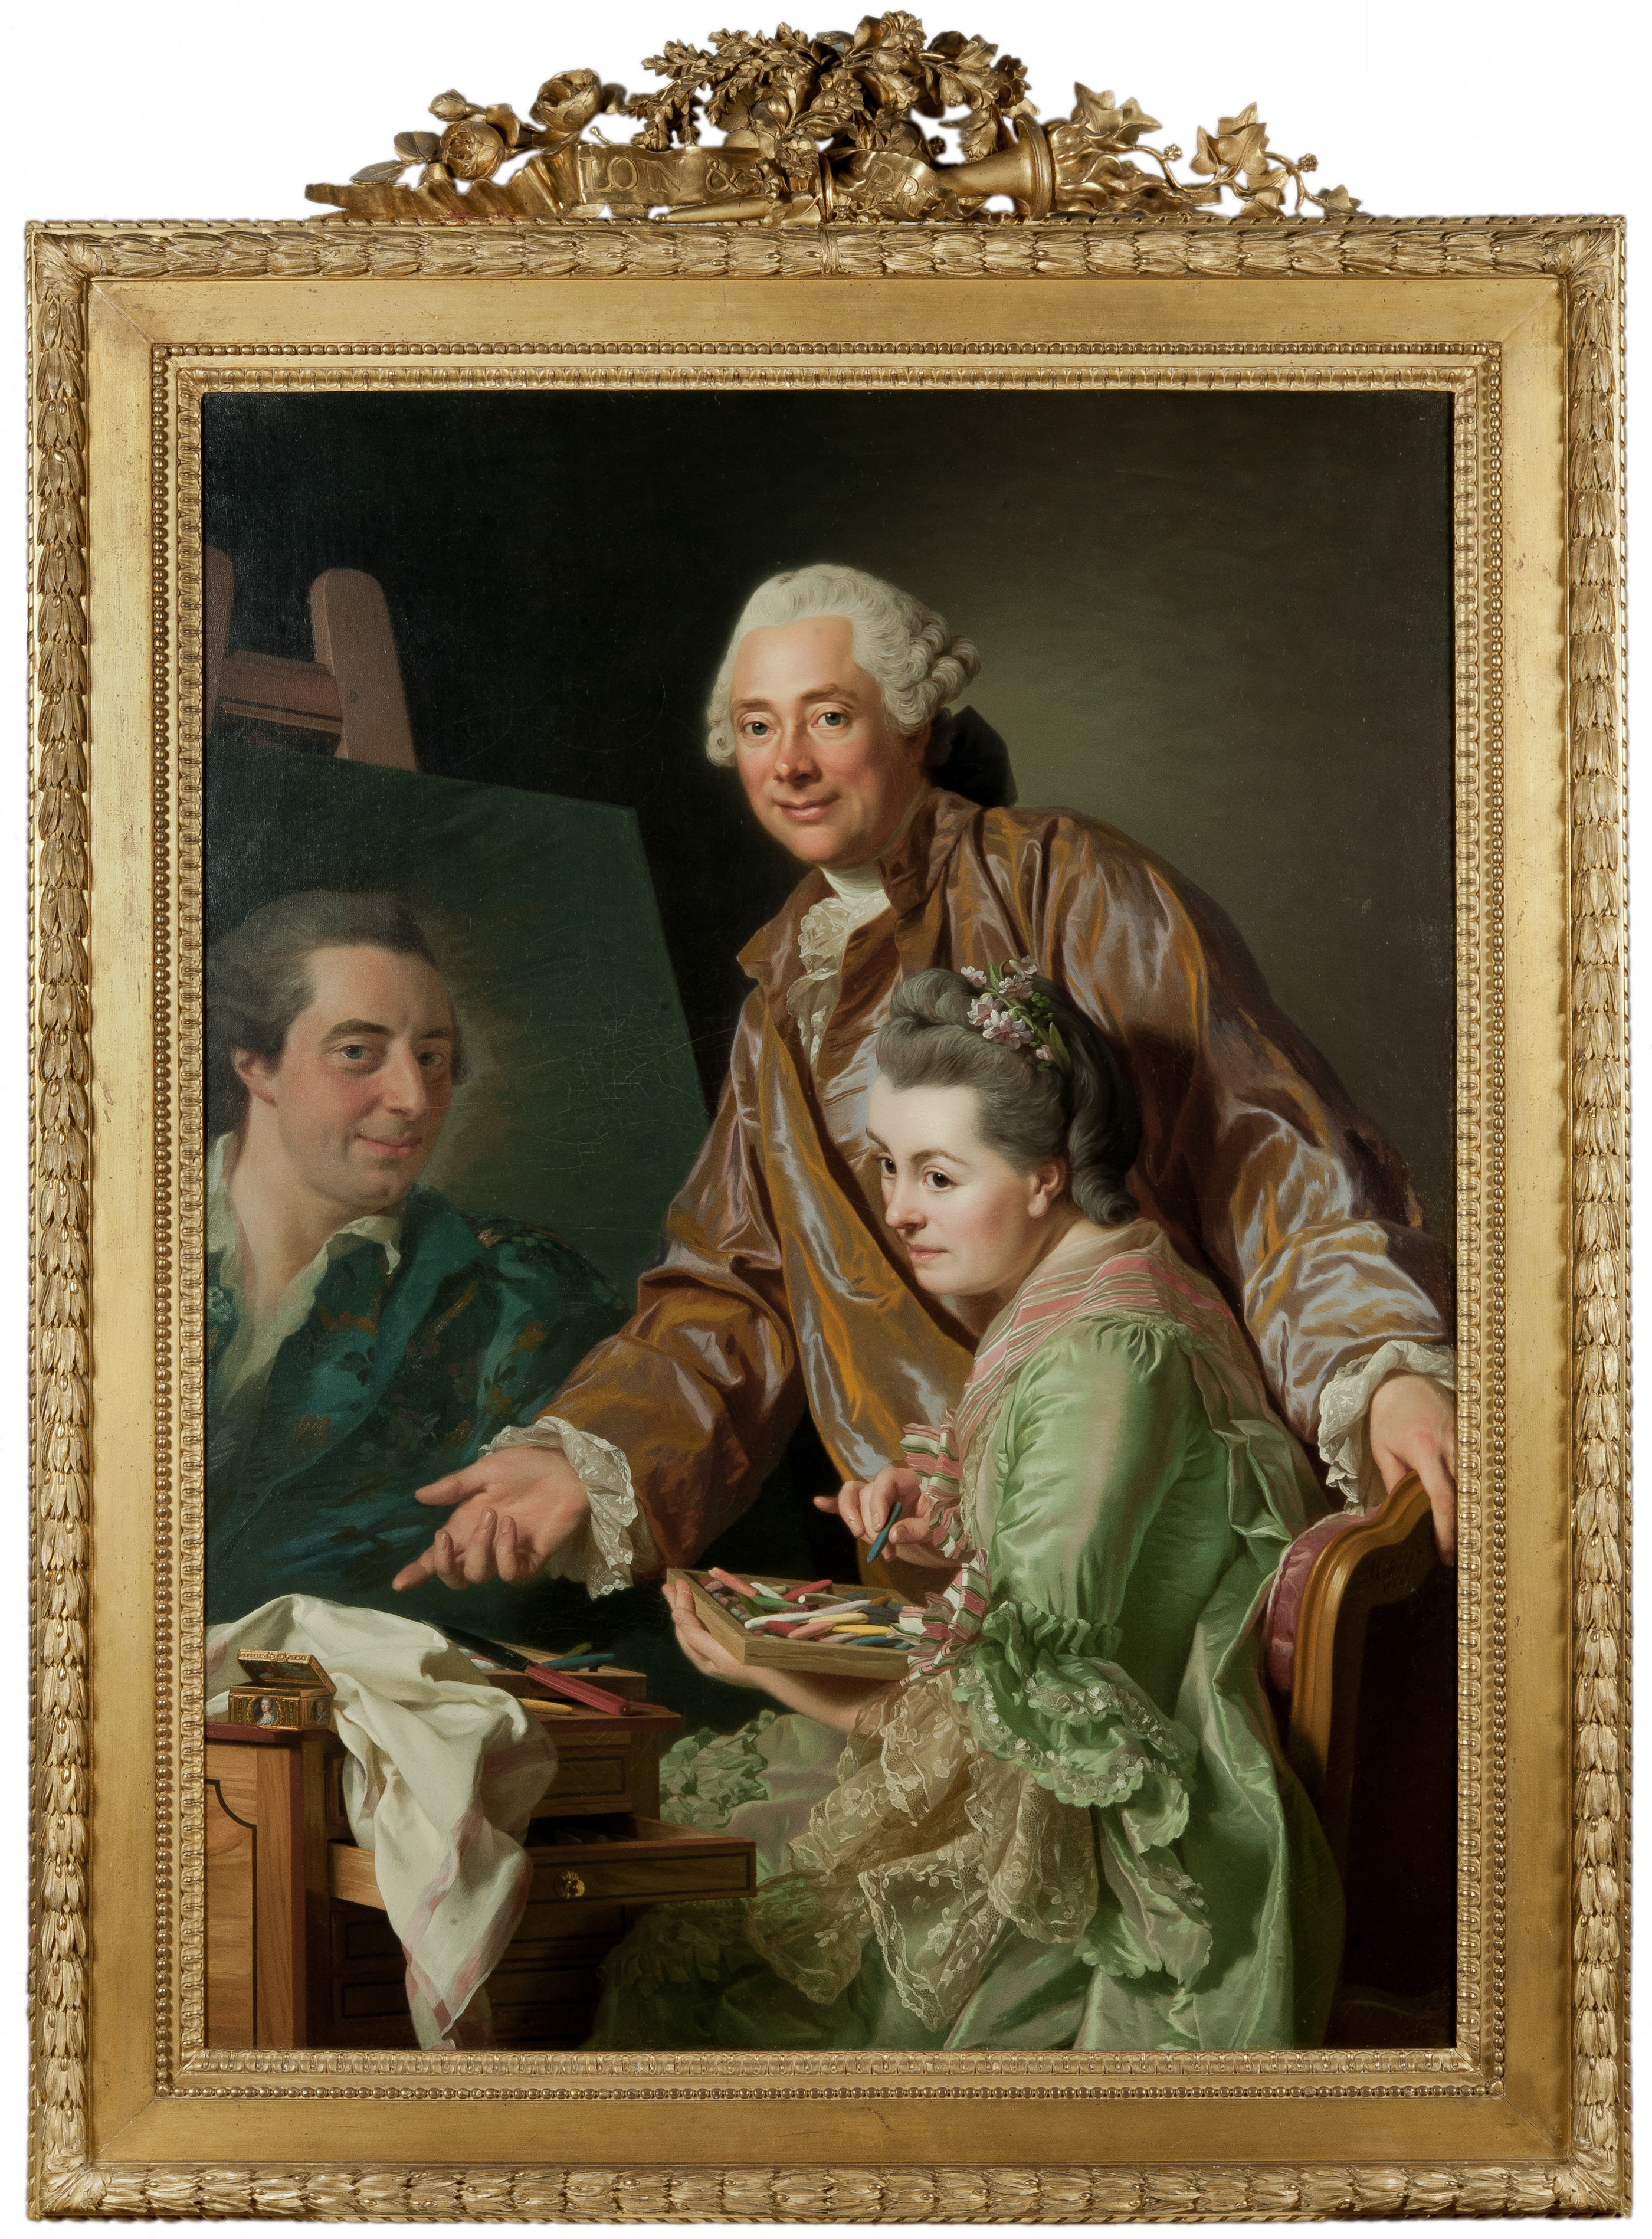 A művész és felesége, Marie Suzanne Giroust Henrik Wilhelm Peill portréjának megfestéséről by Alexander Roslin - 1767 - 131 x 98,5 cm 